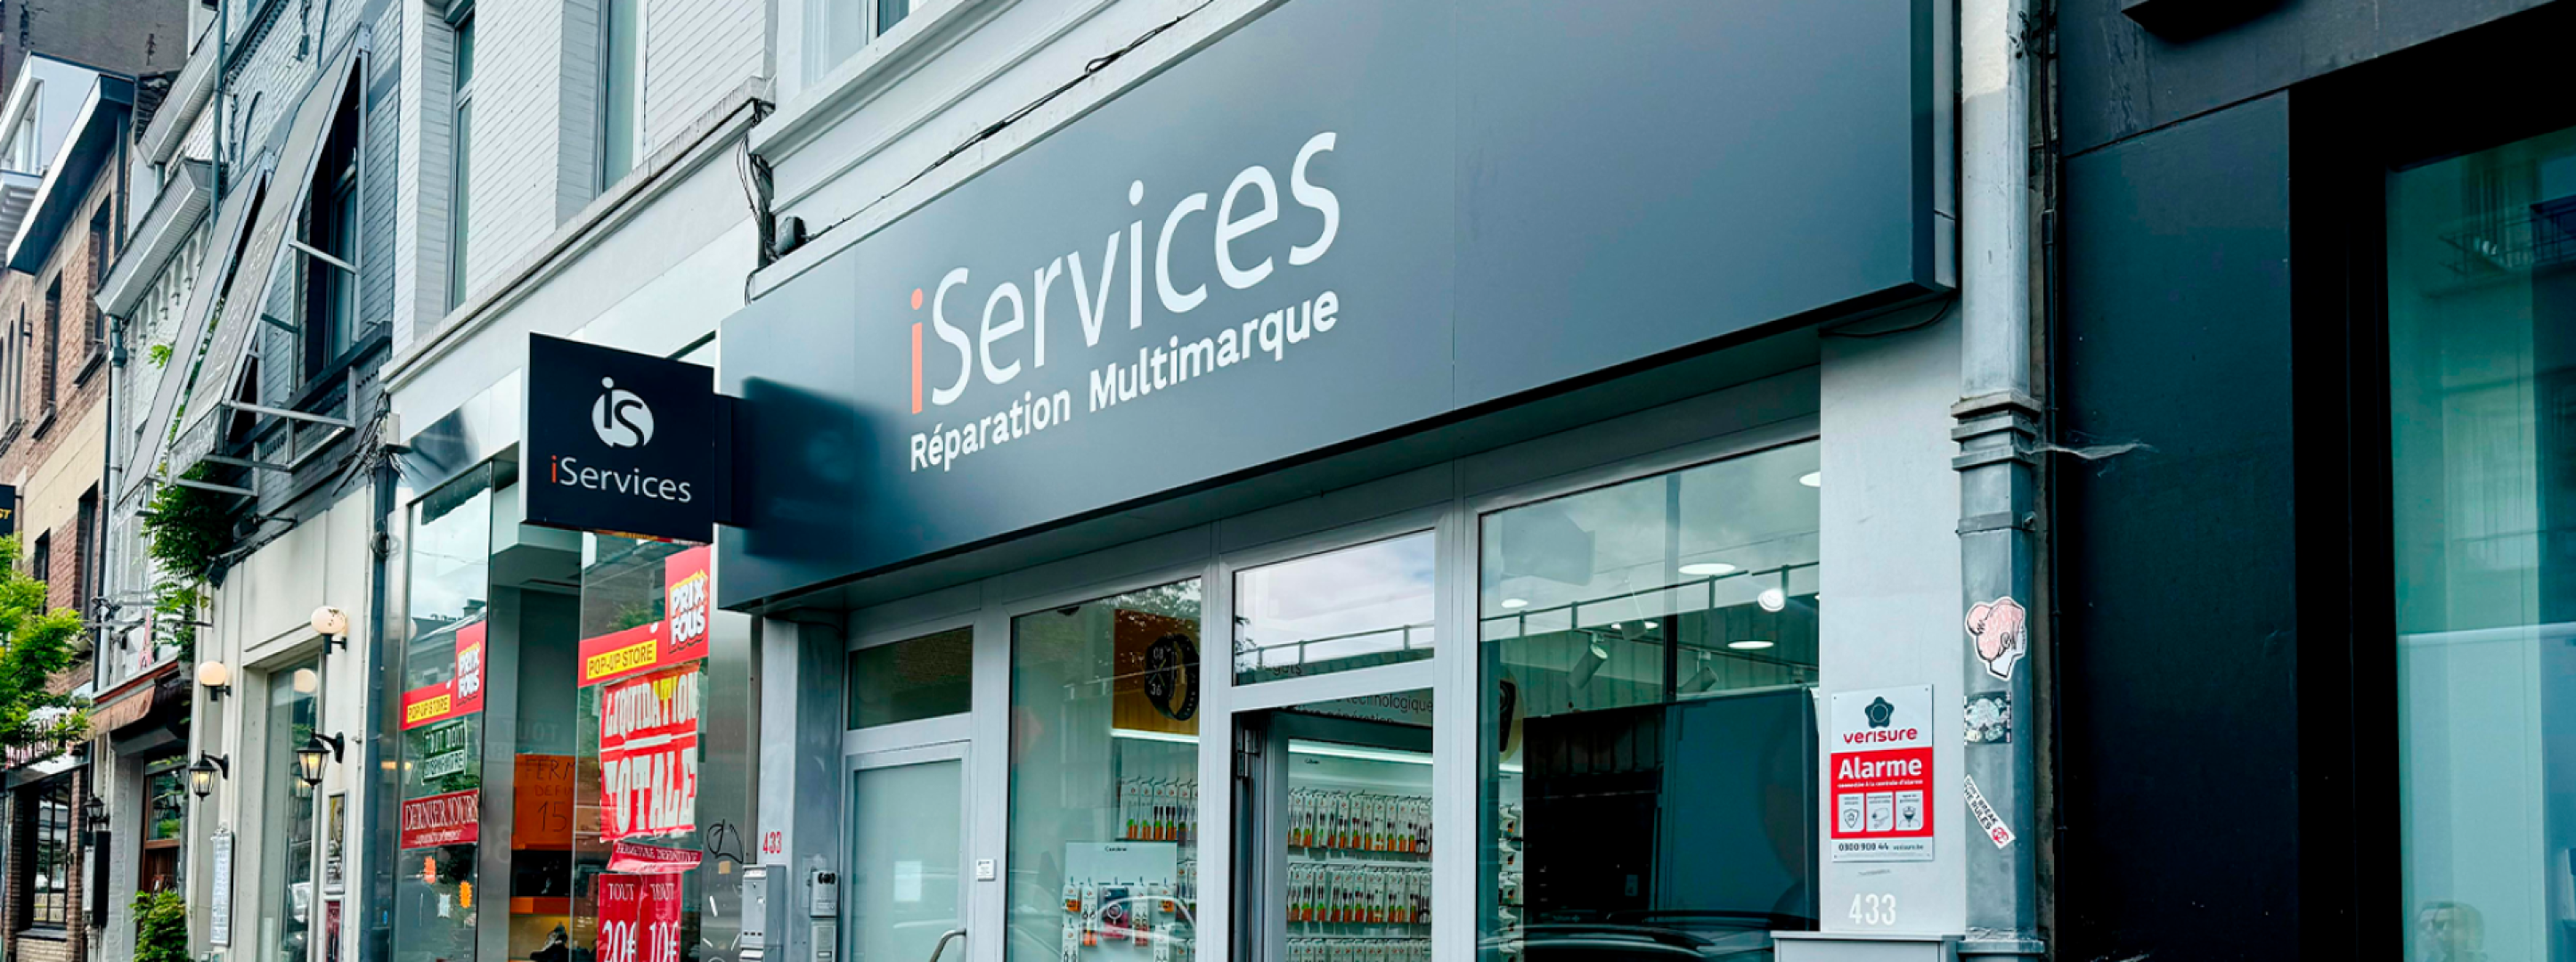 iServices ouvre son septième magasin en Belgique  blog post